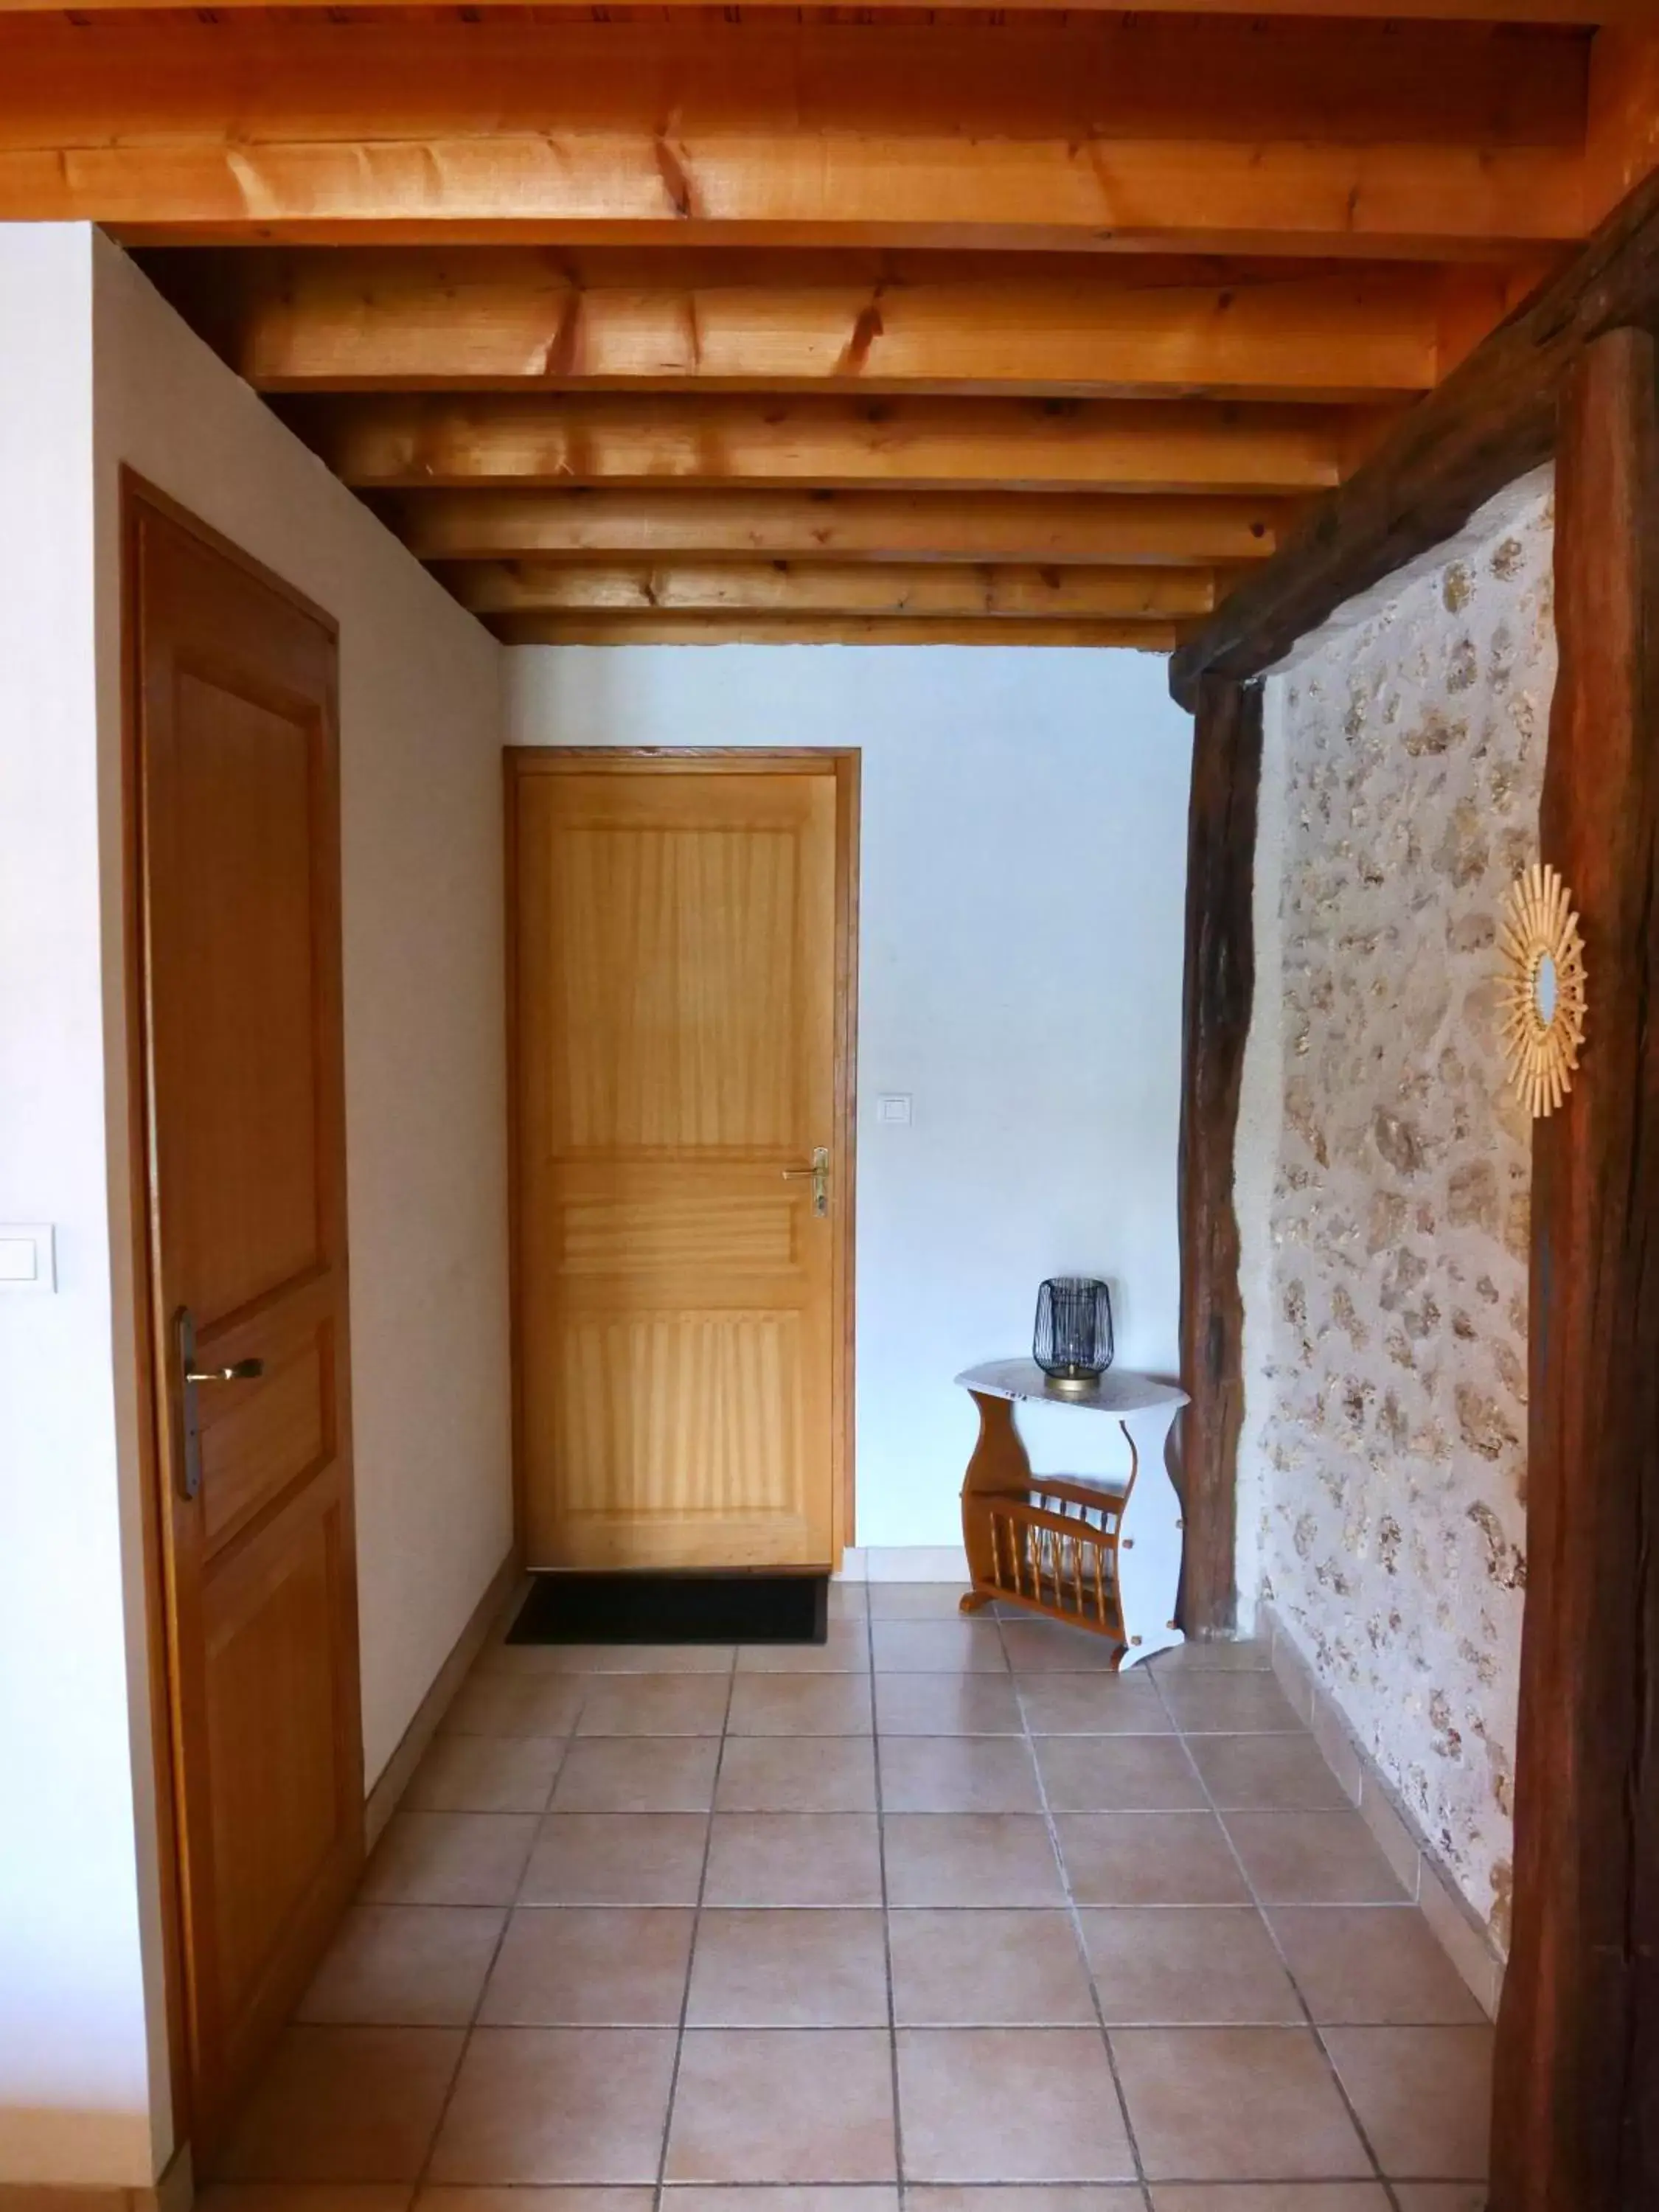 Photo of the whole room in Domaine du Cellier de la Couronne